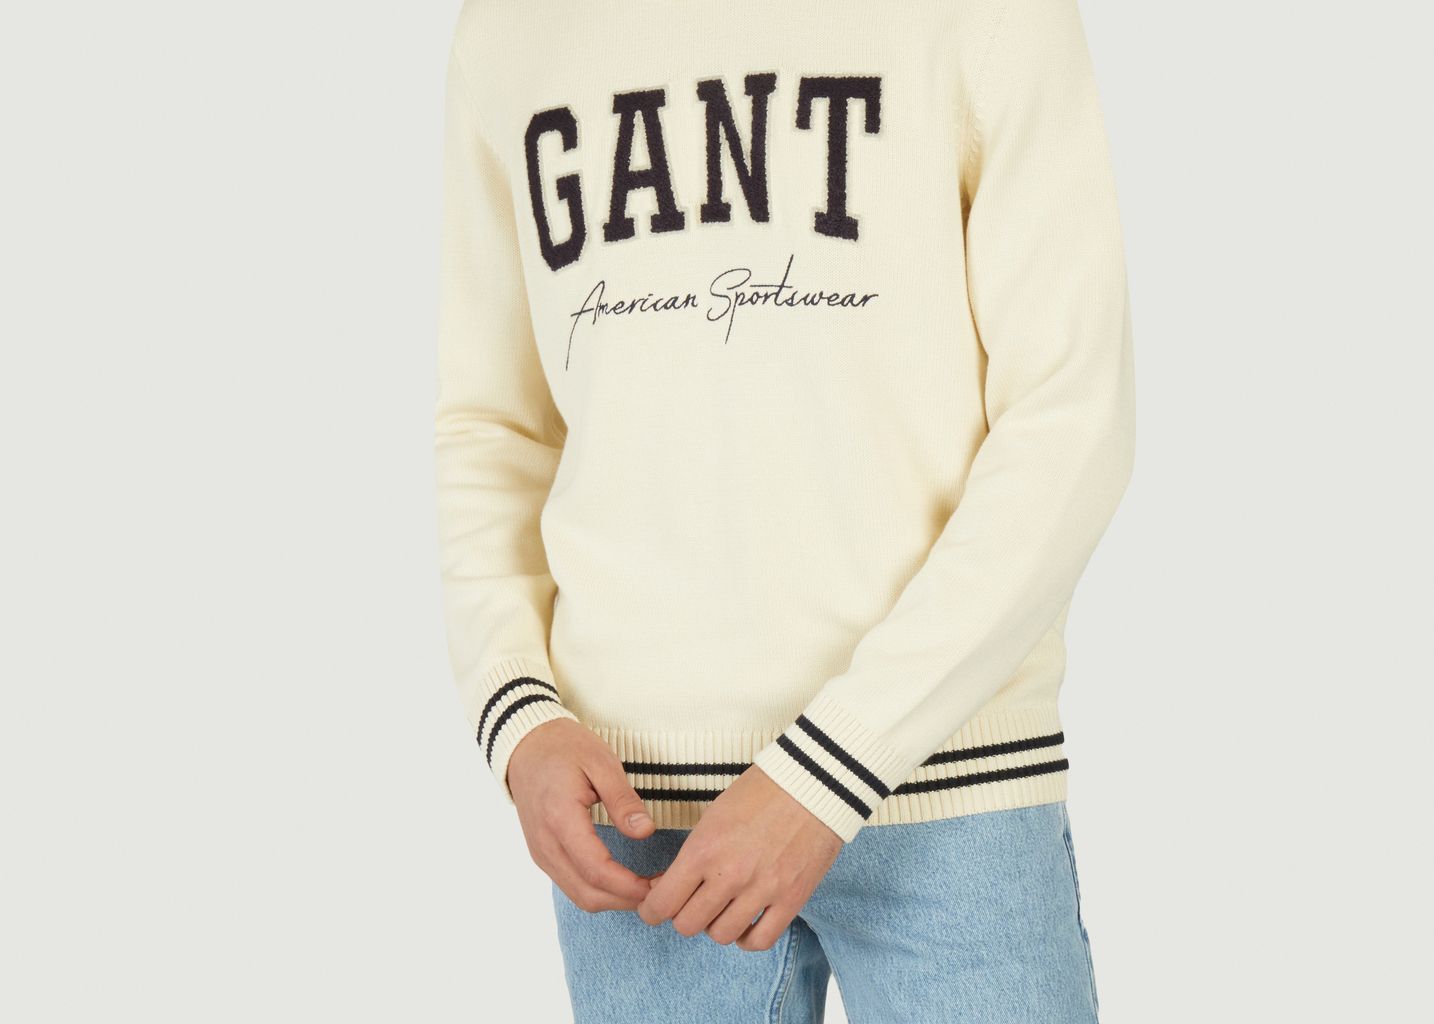 Logotype Collegiate casual sweater - Gant